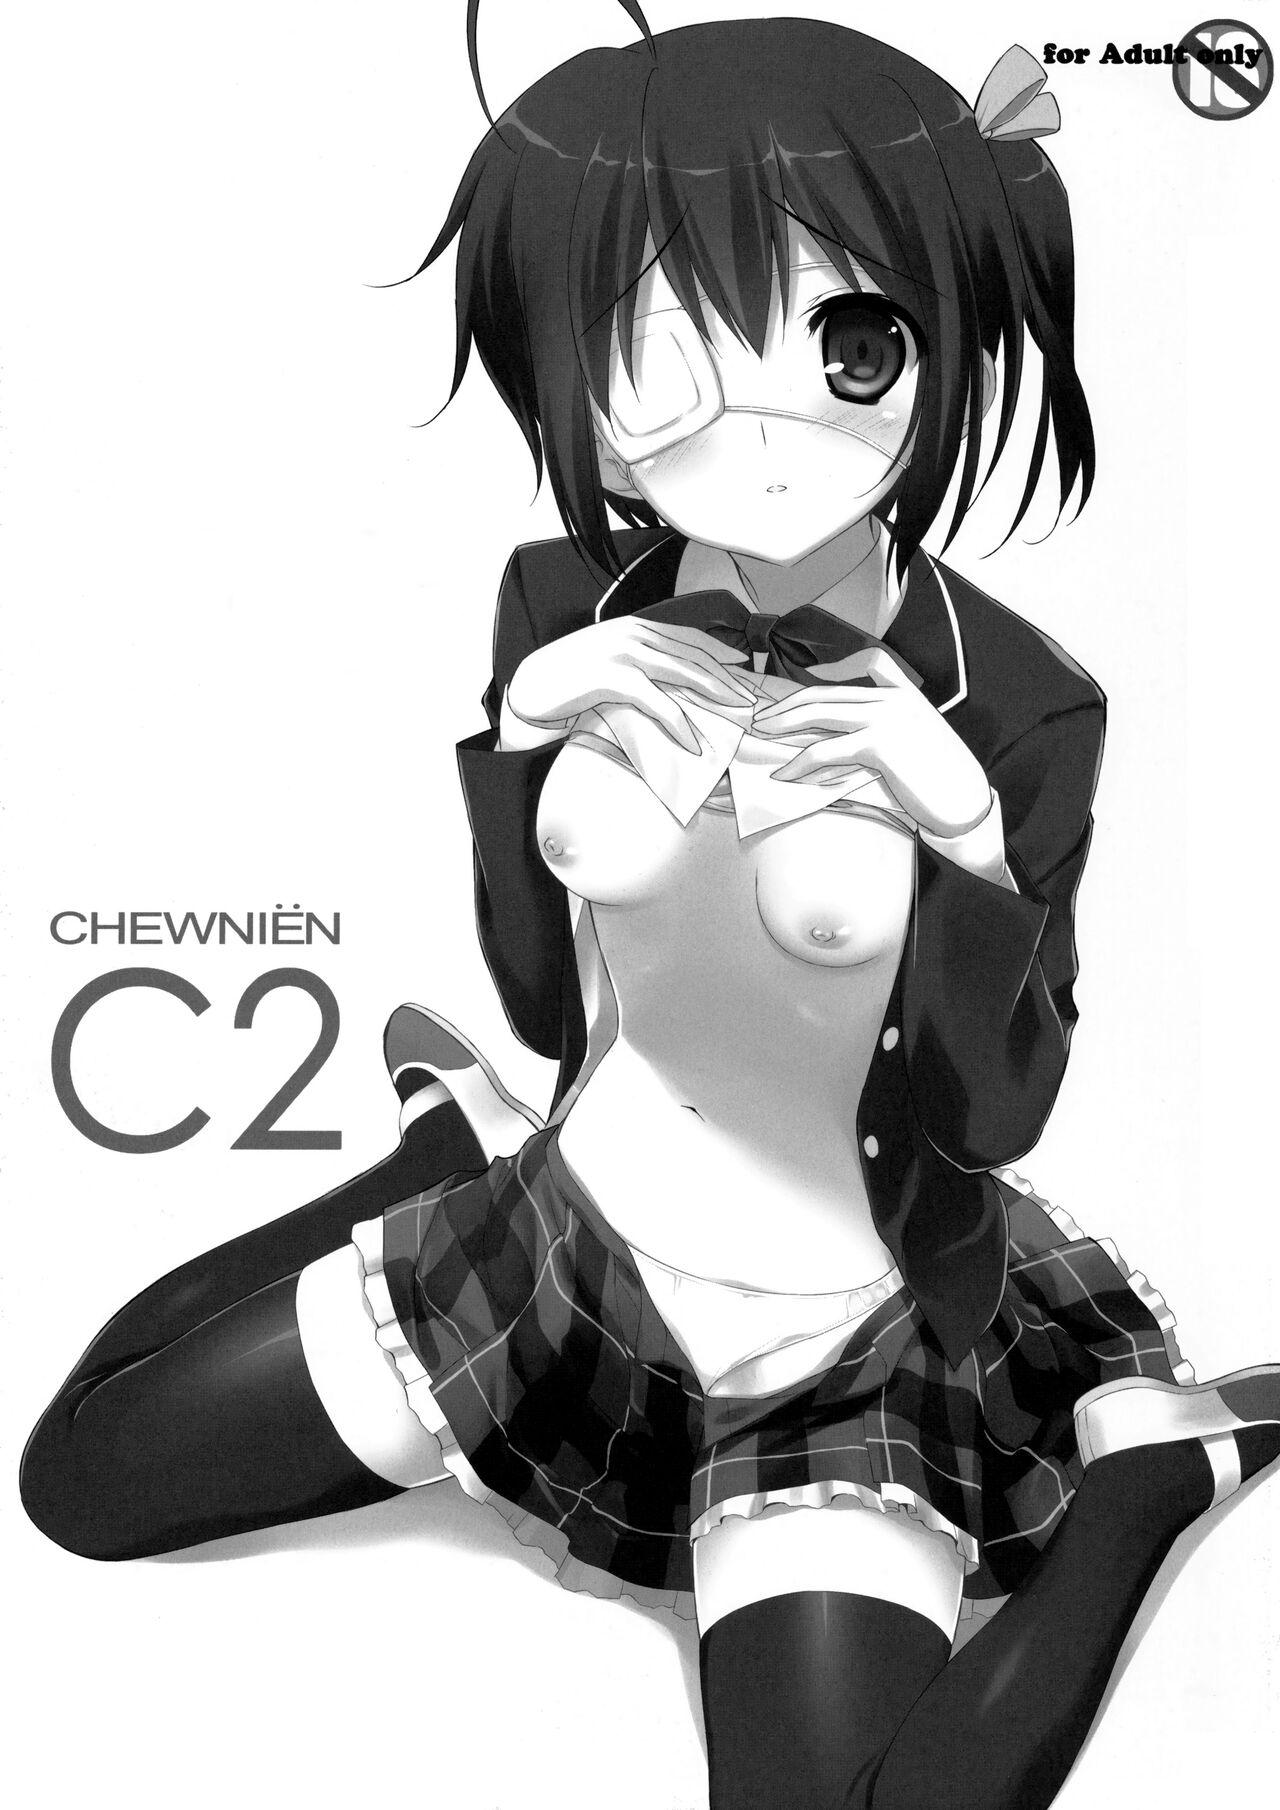 Closeup CHEWNIEN C2 - Chuunibyou demo koi ga shitai Sucking - Picture 2